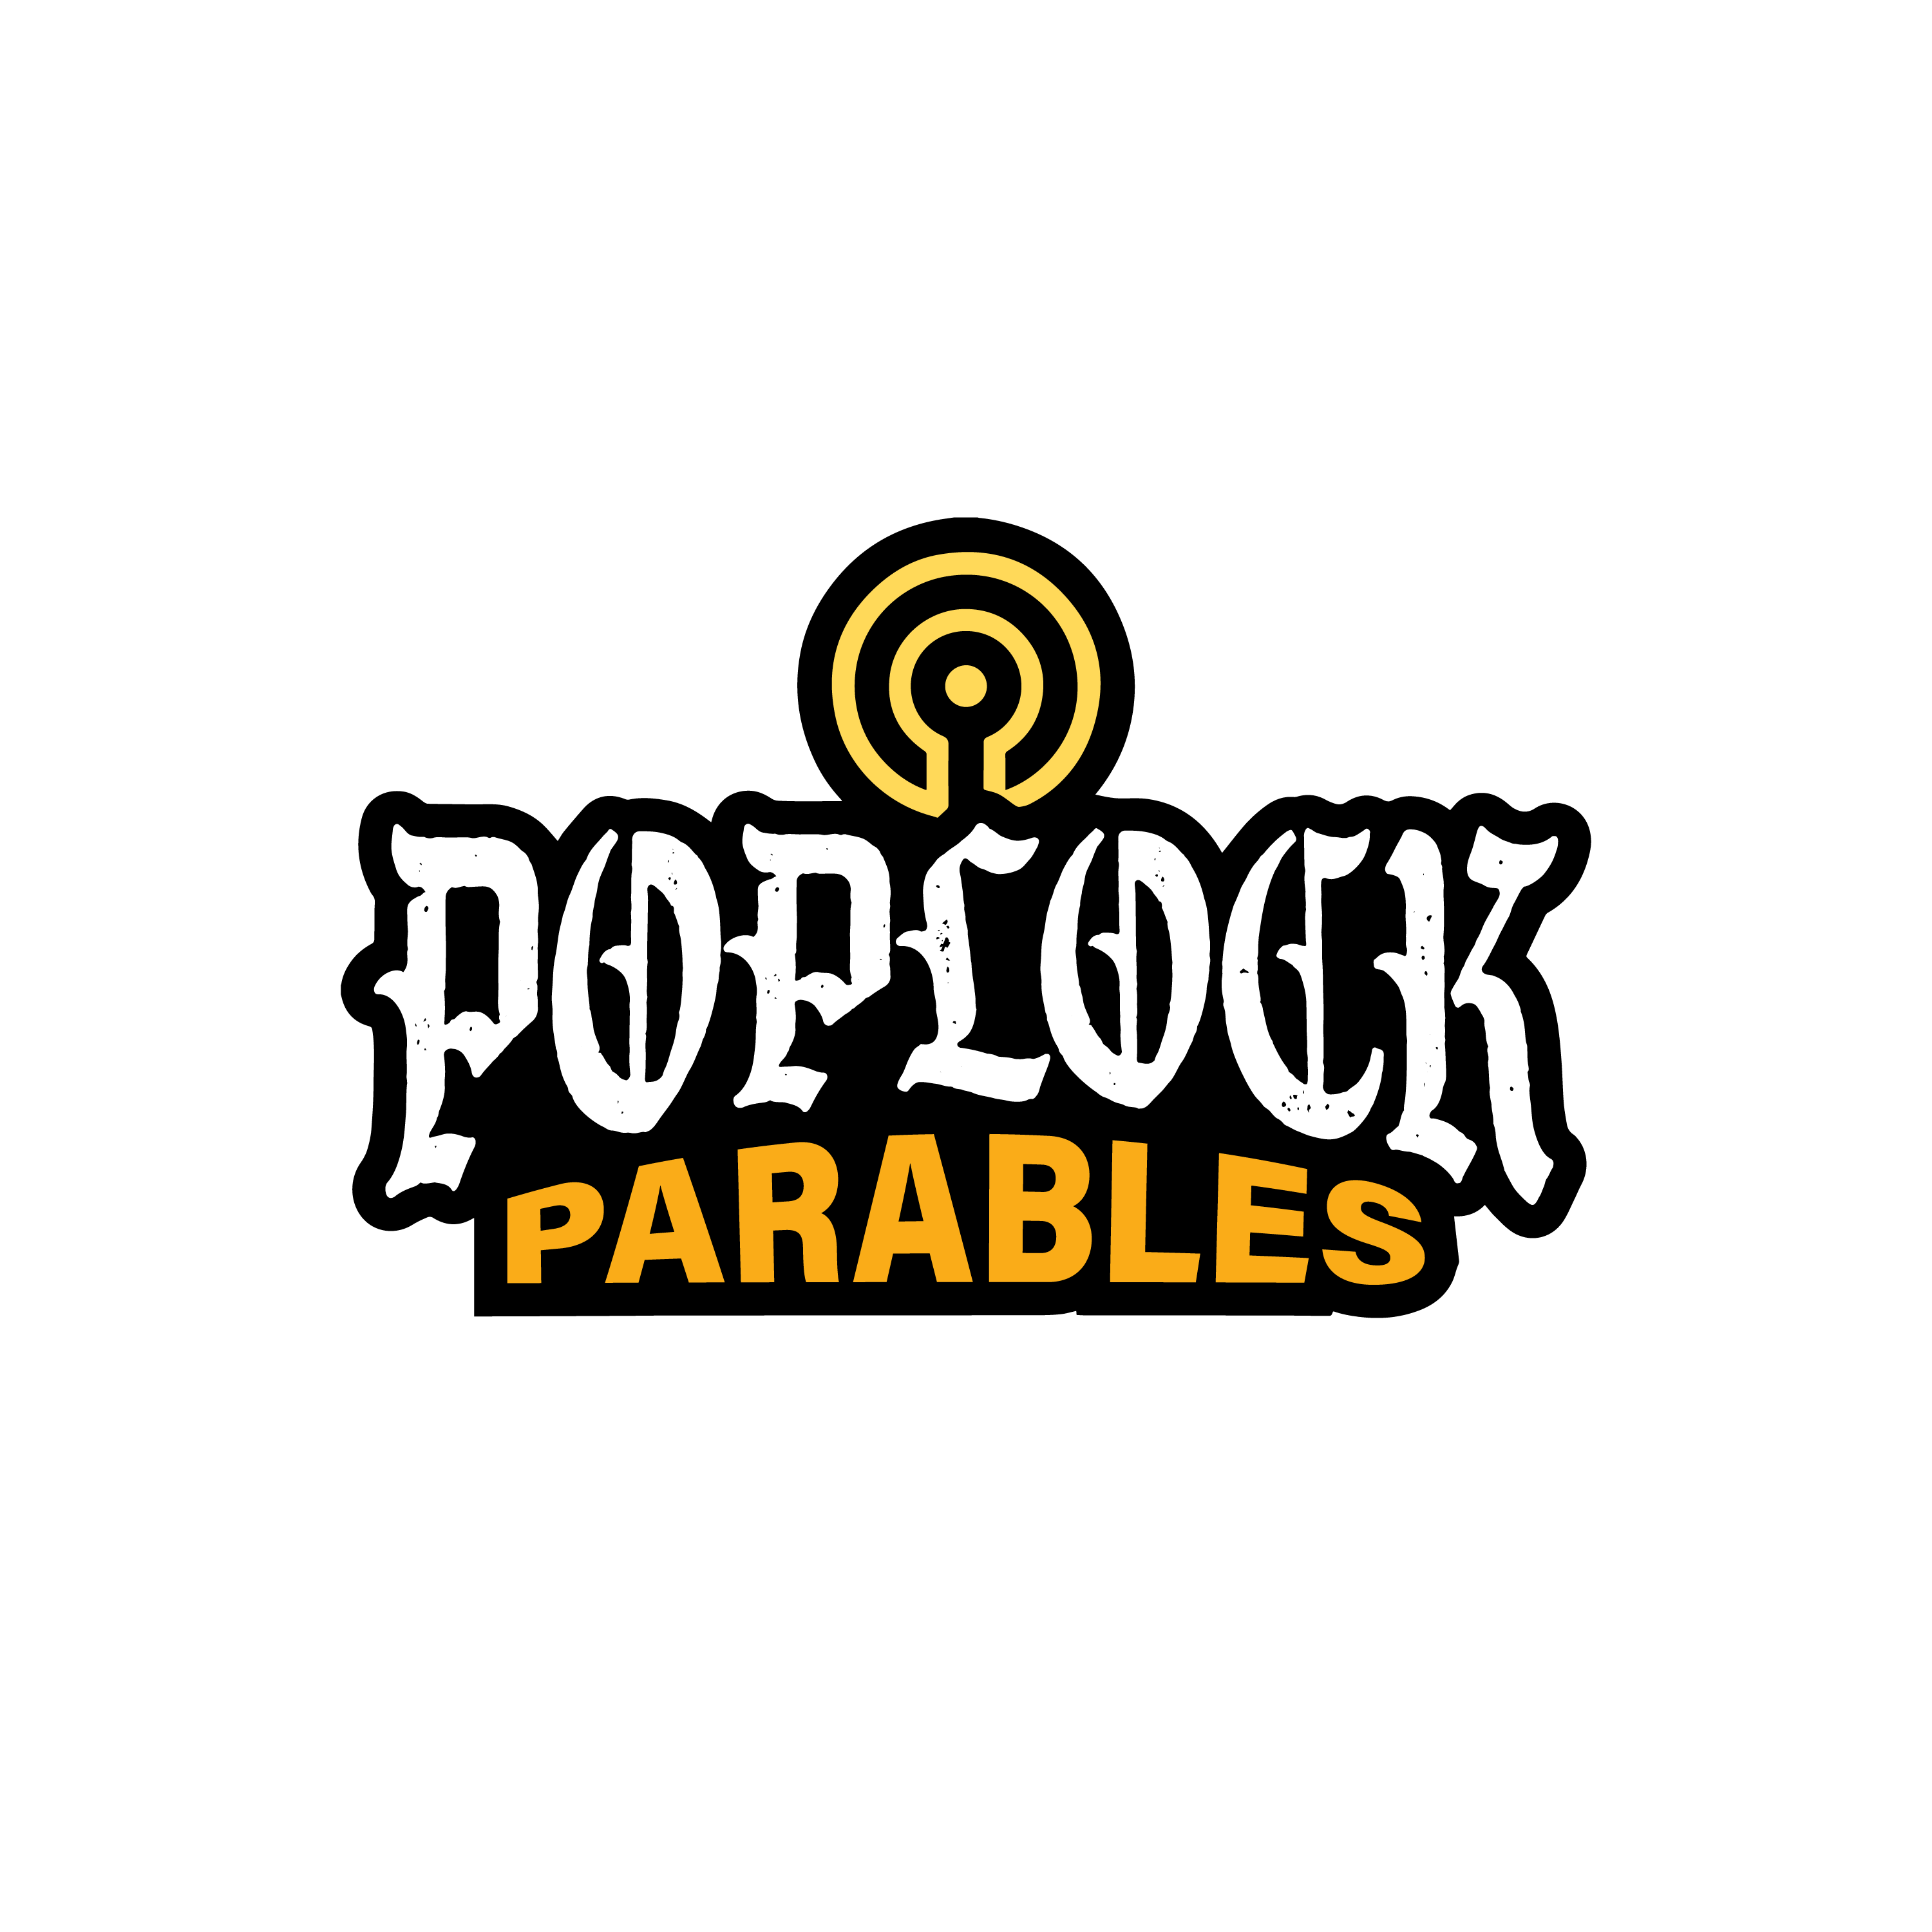 Poplock Parables